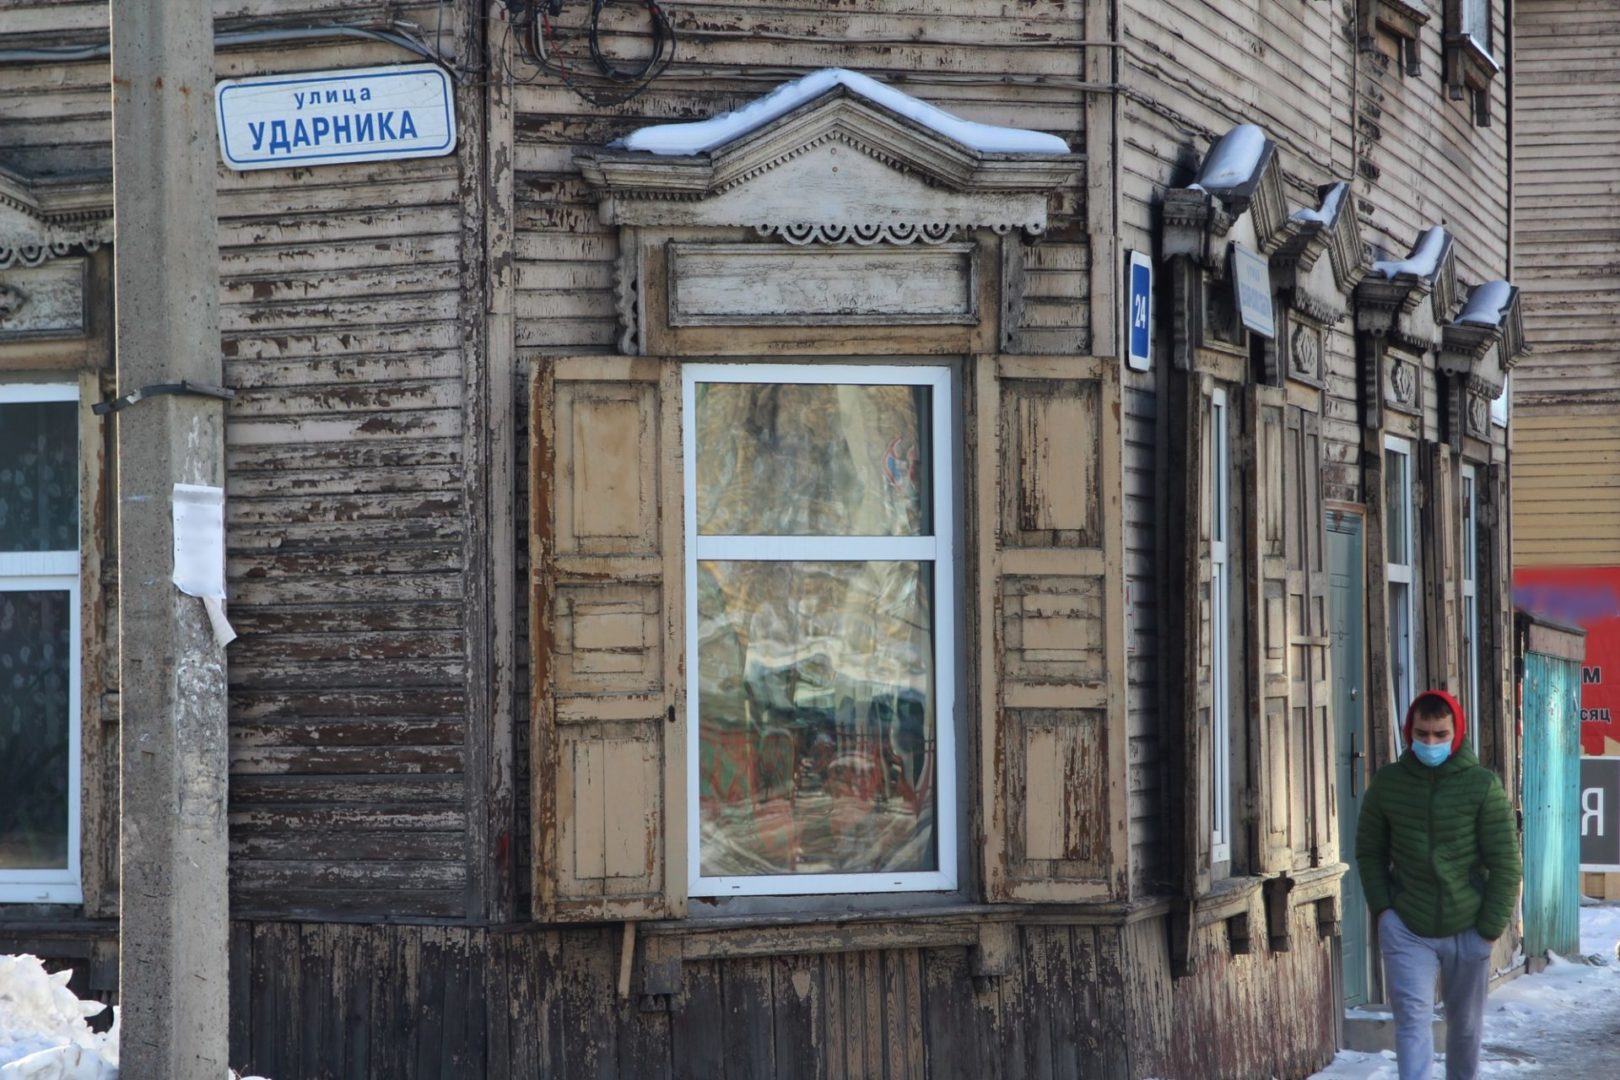 Улица Ударника в Иркутске: разрушающееся спокойствие